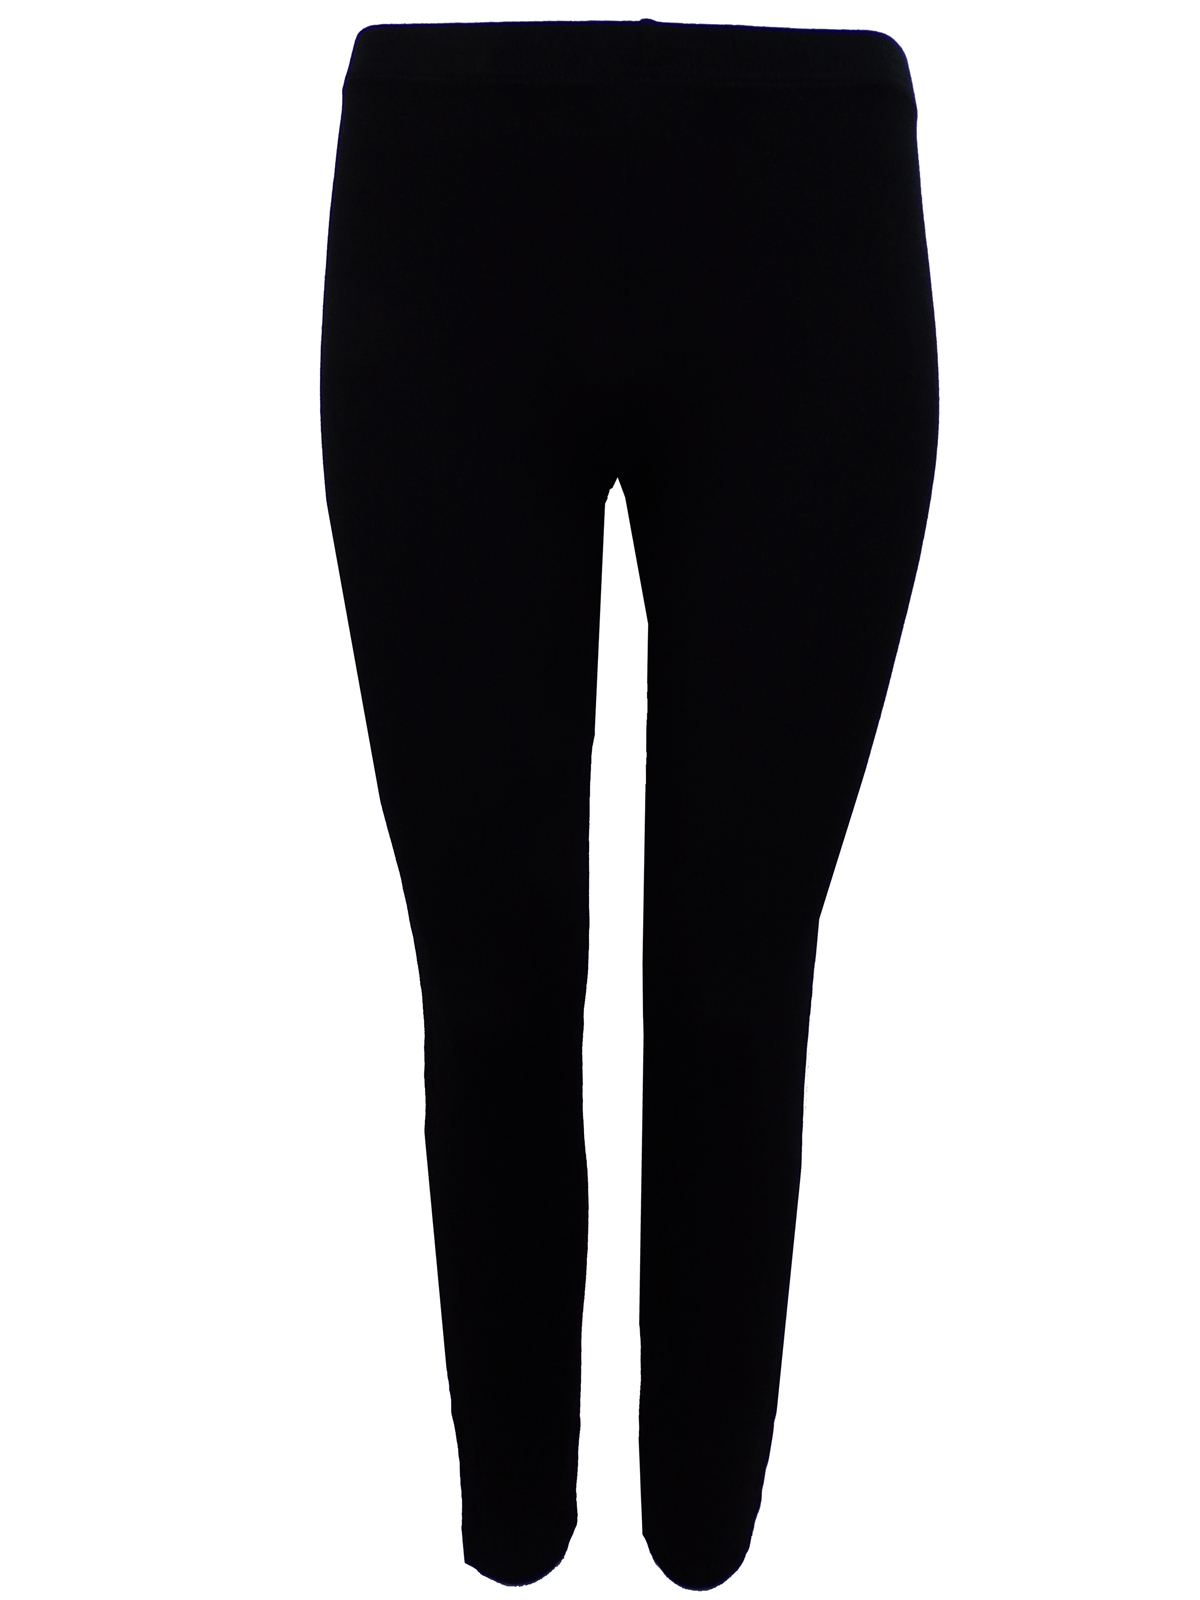 BLACK Full Length Jersey Leggings - Size 12/14 (Medium)